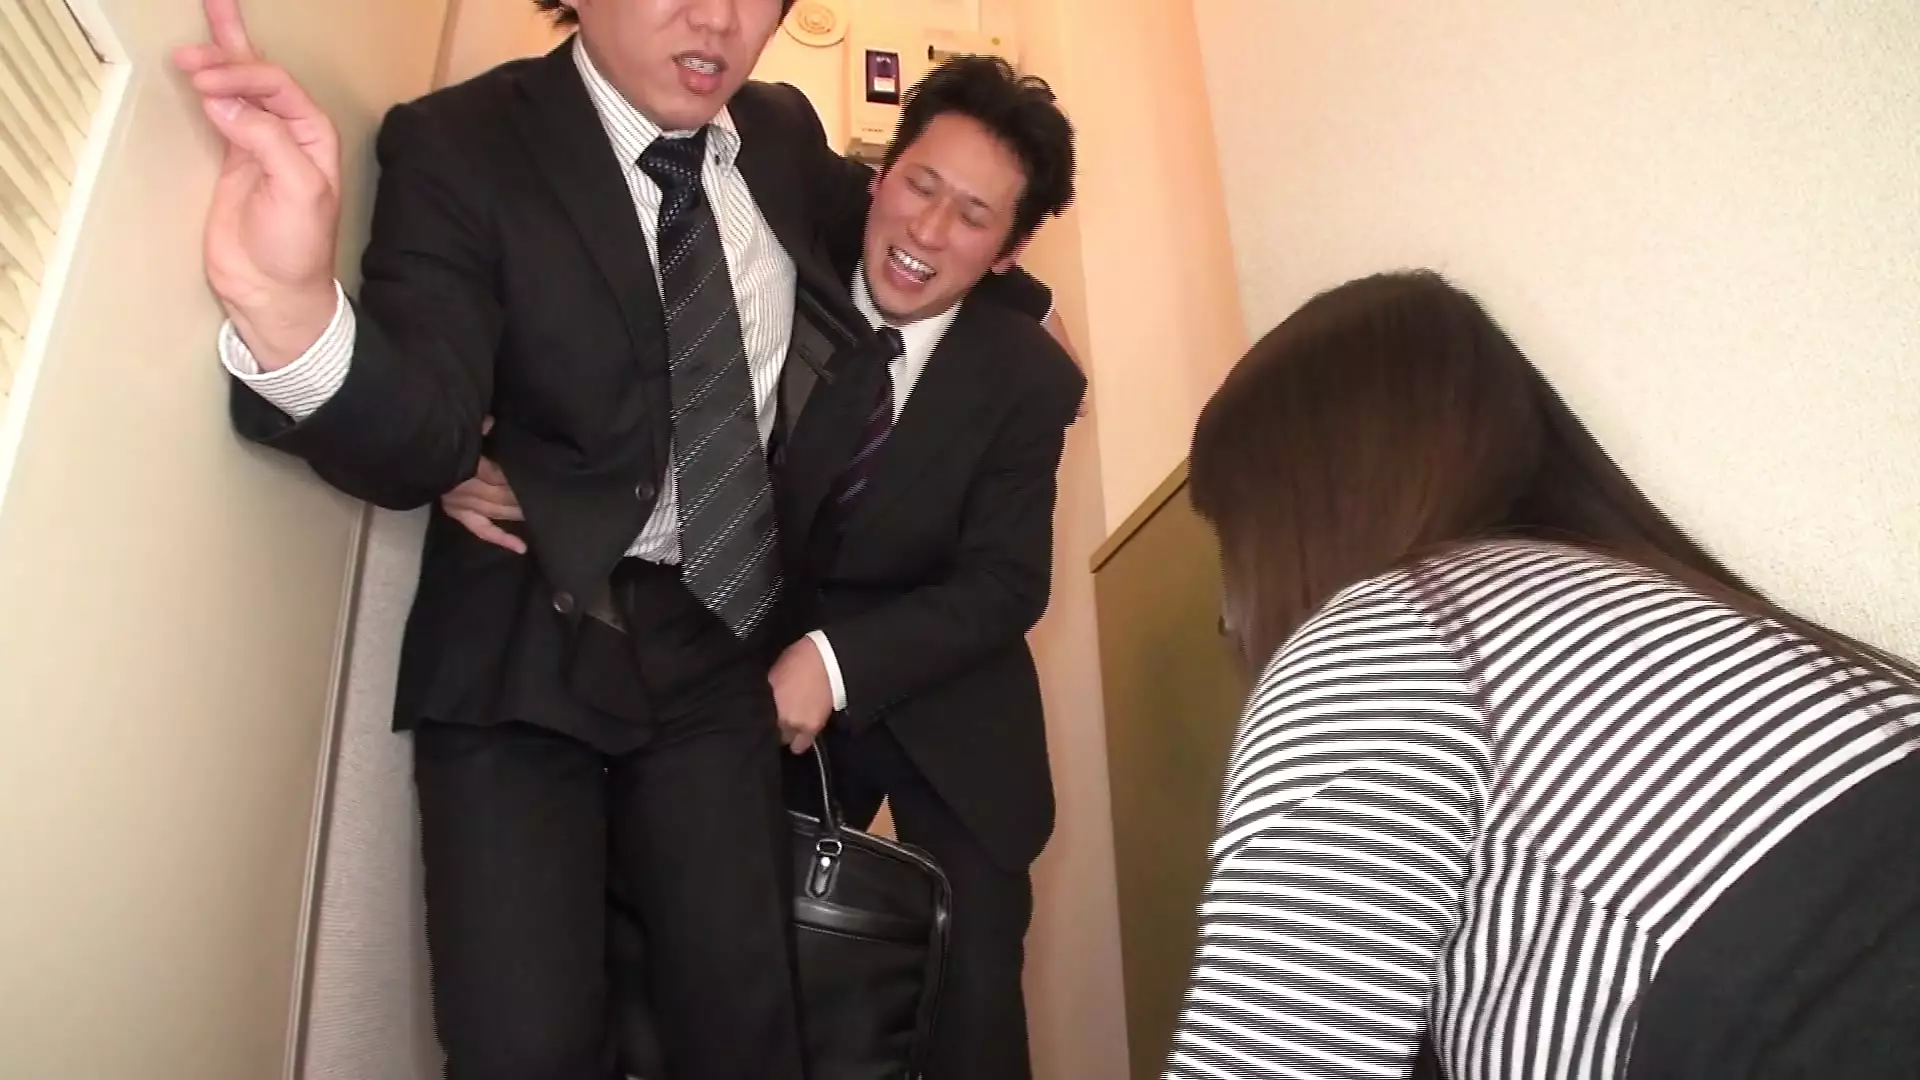 Japanese milf slut gives her cunt to her husbands coworker at dinner time!